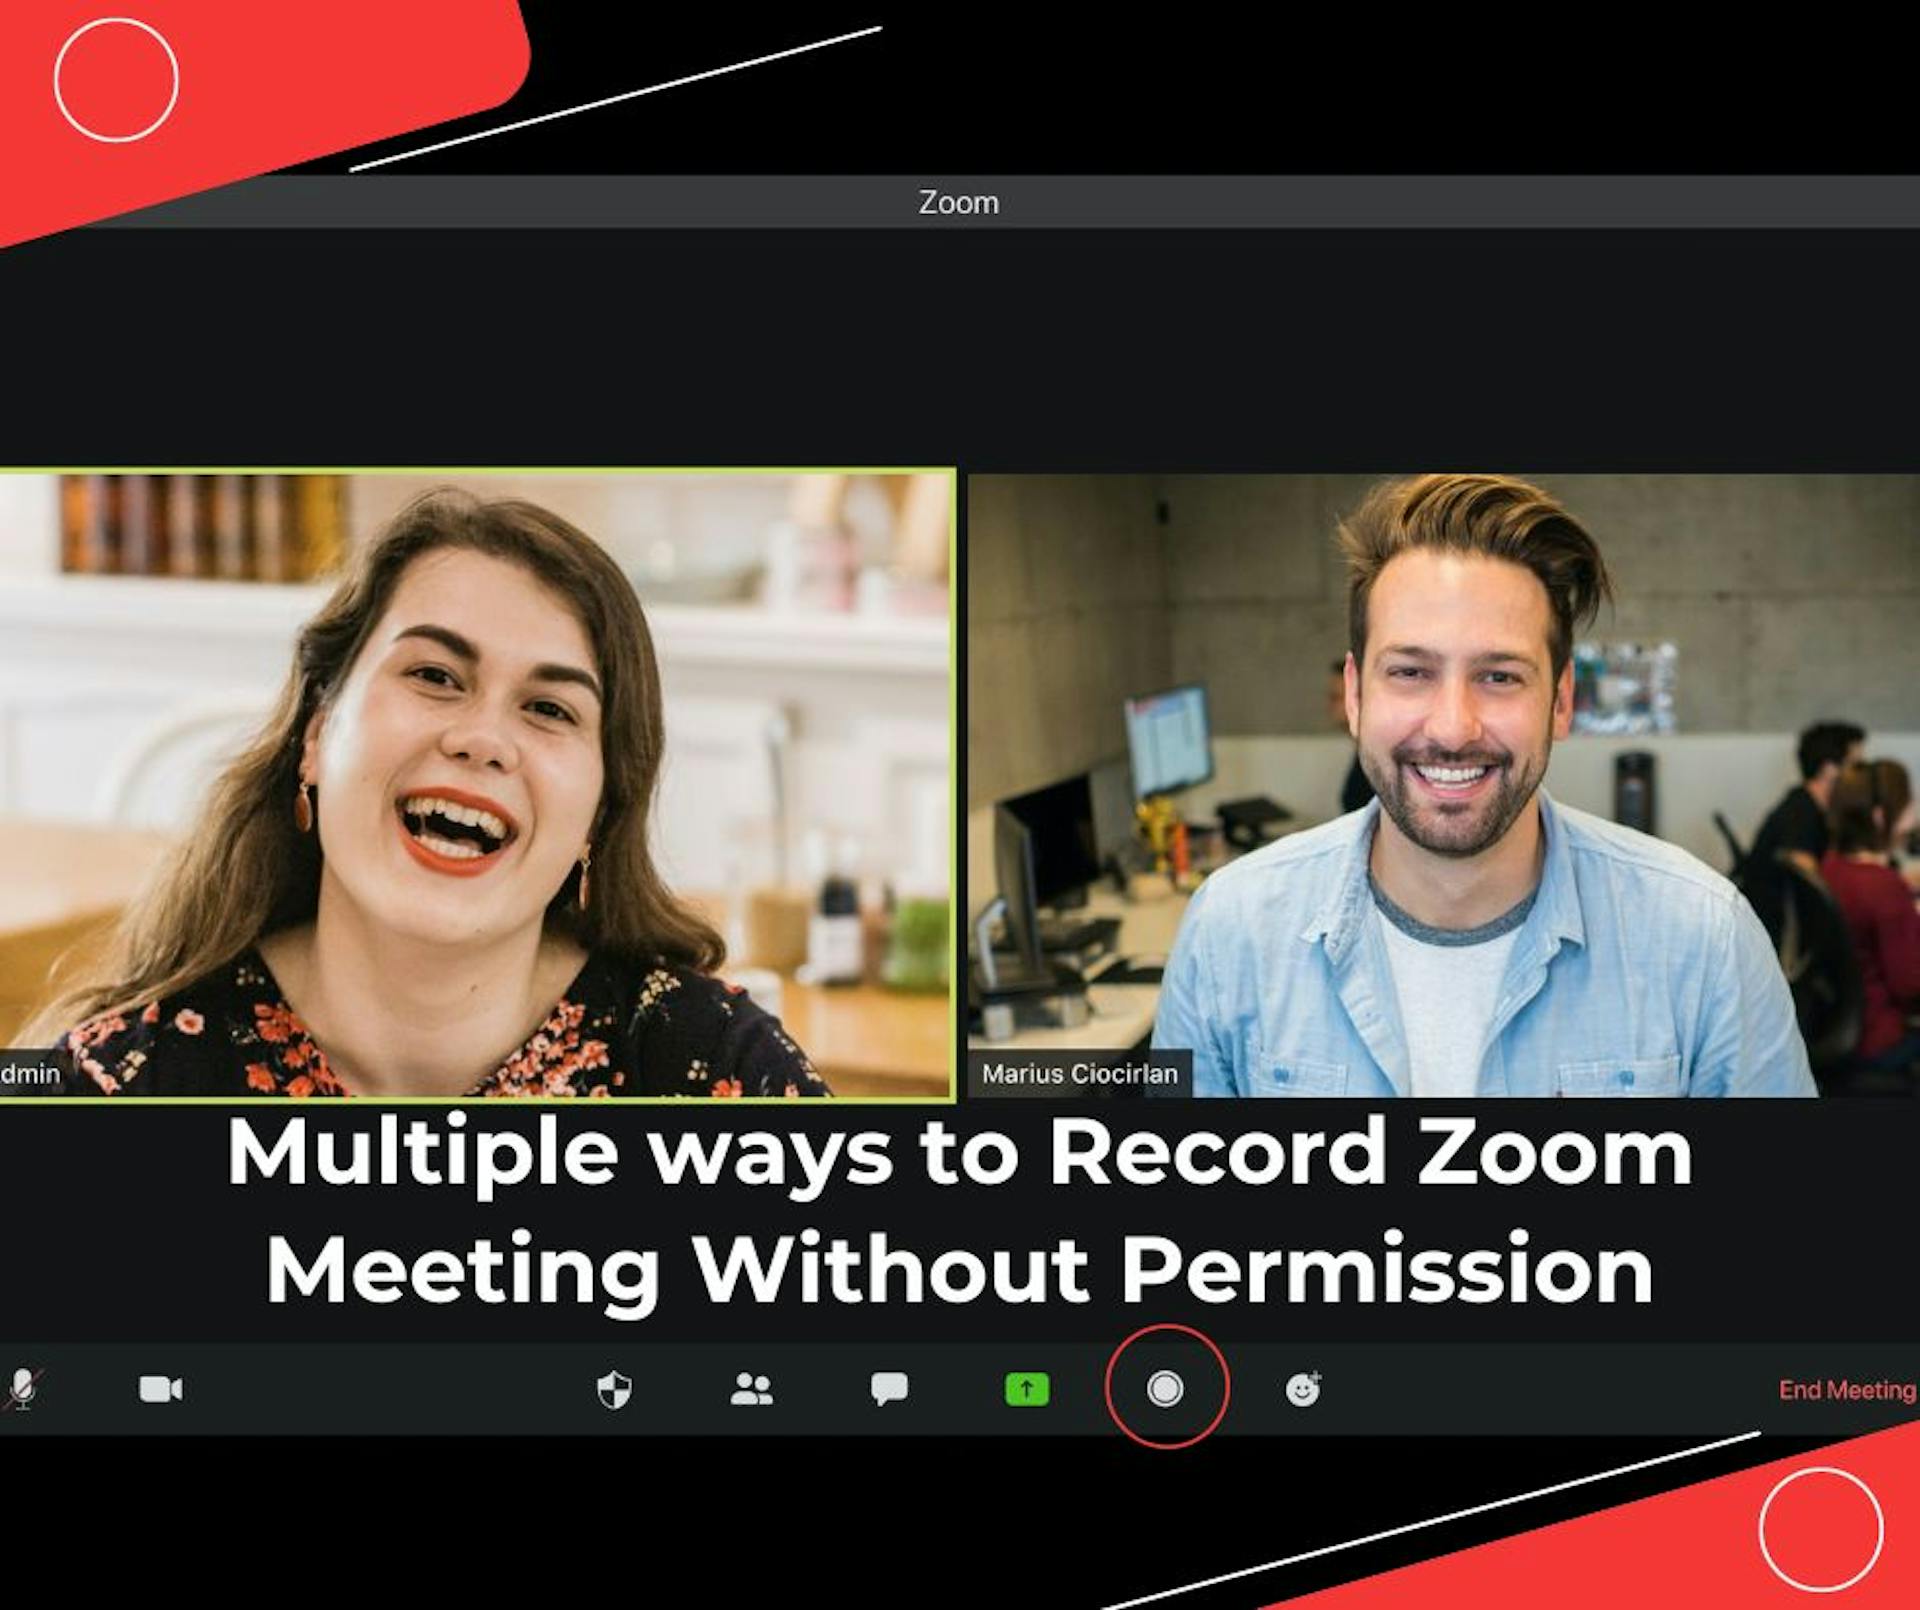 featured image - Cómo grabar una reunión de Zoom sin permiso en teléfono, Windows y Mac